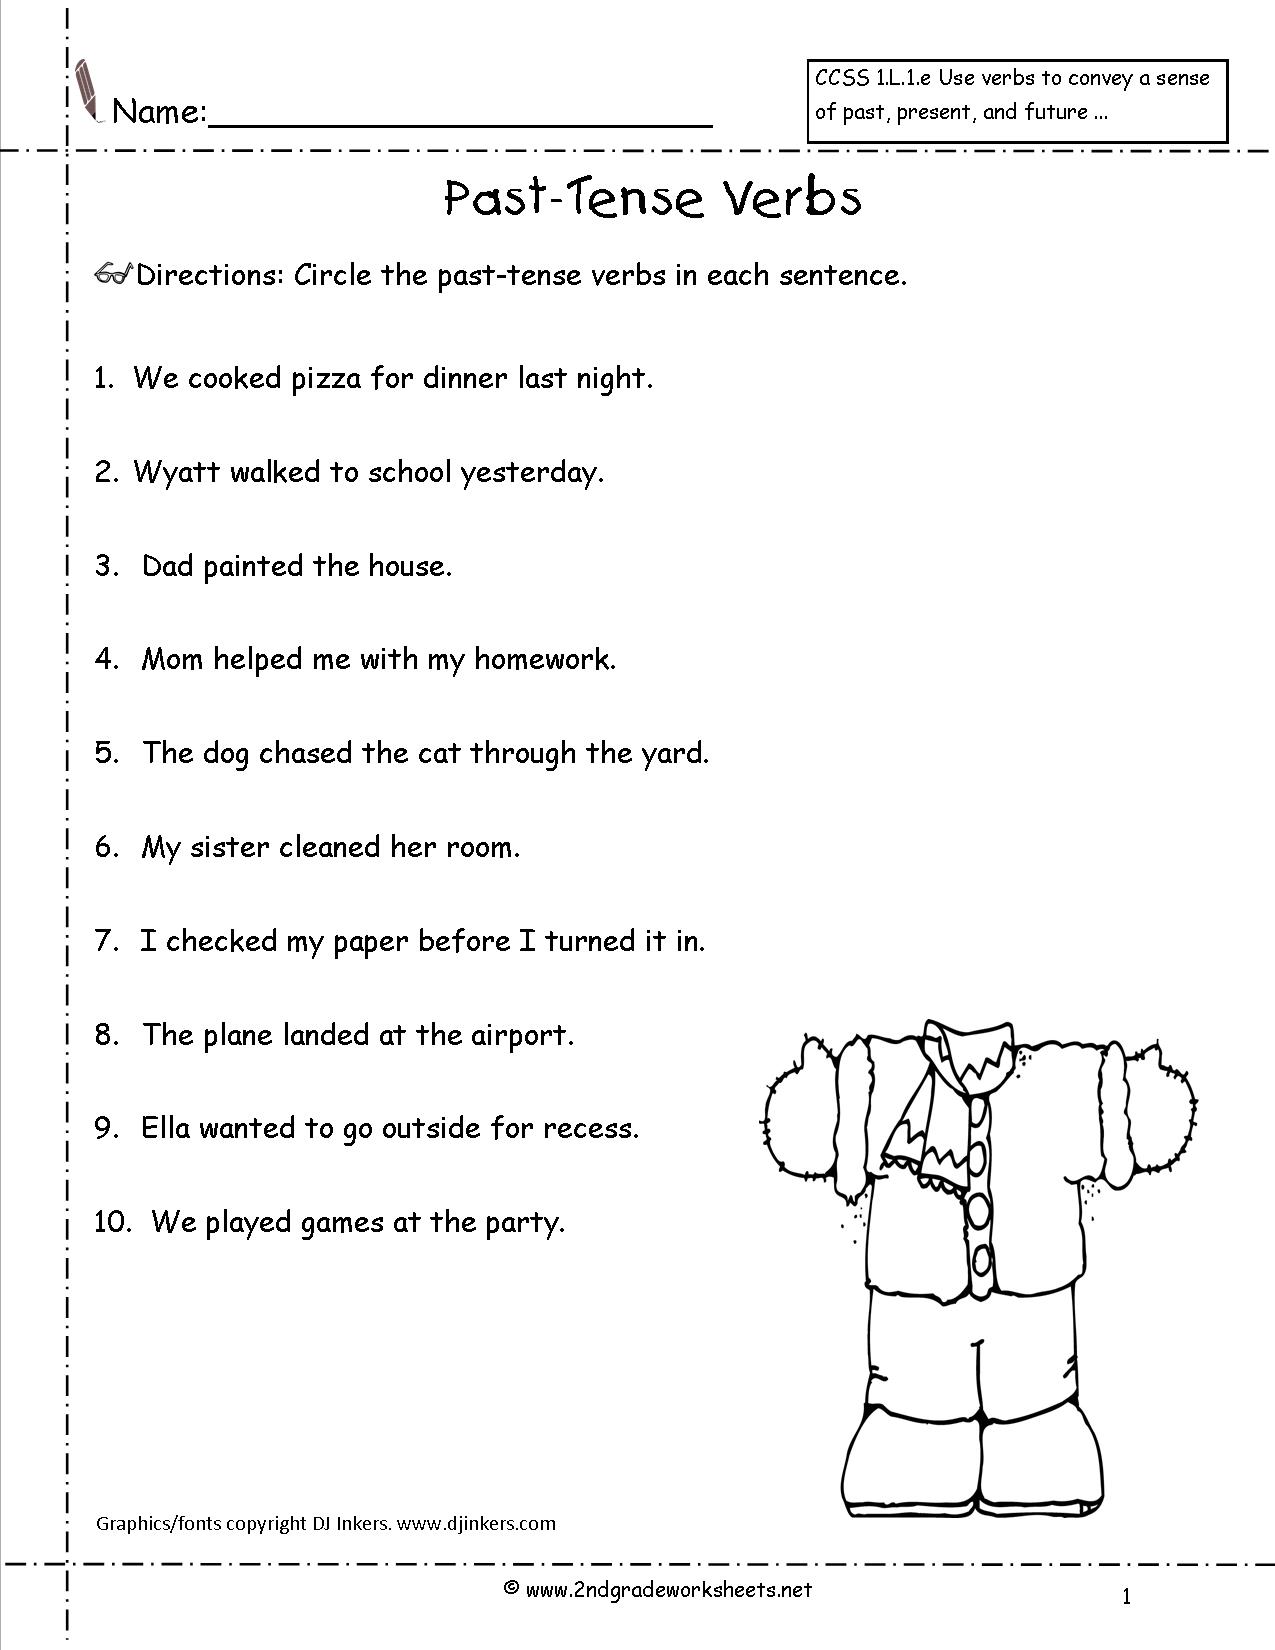 Past Tense Verb Worksheet First Grade Image